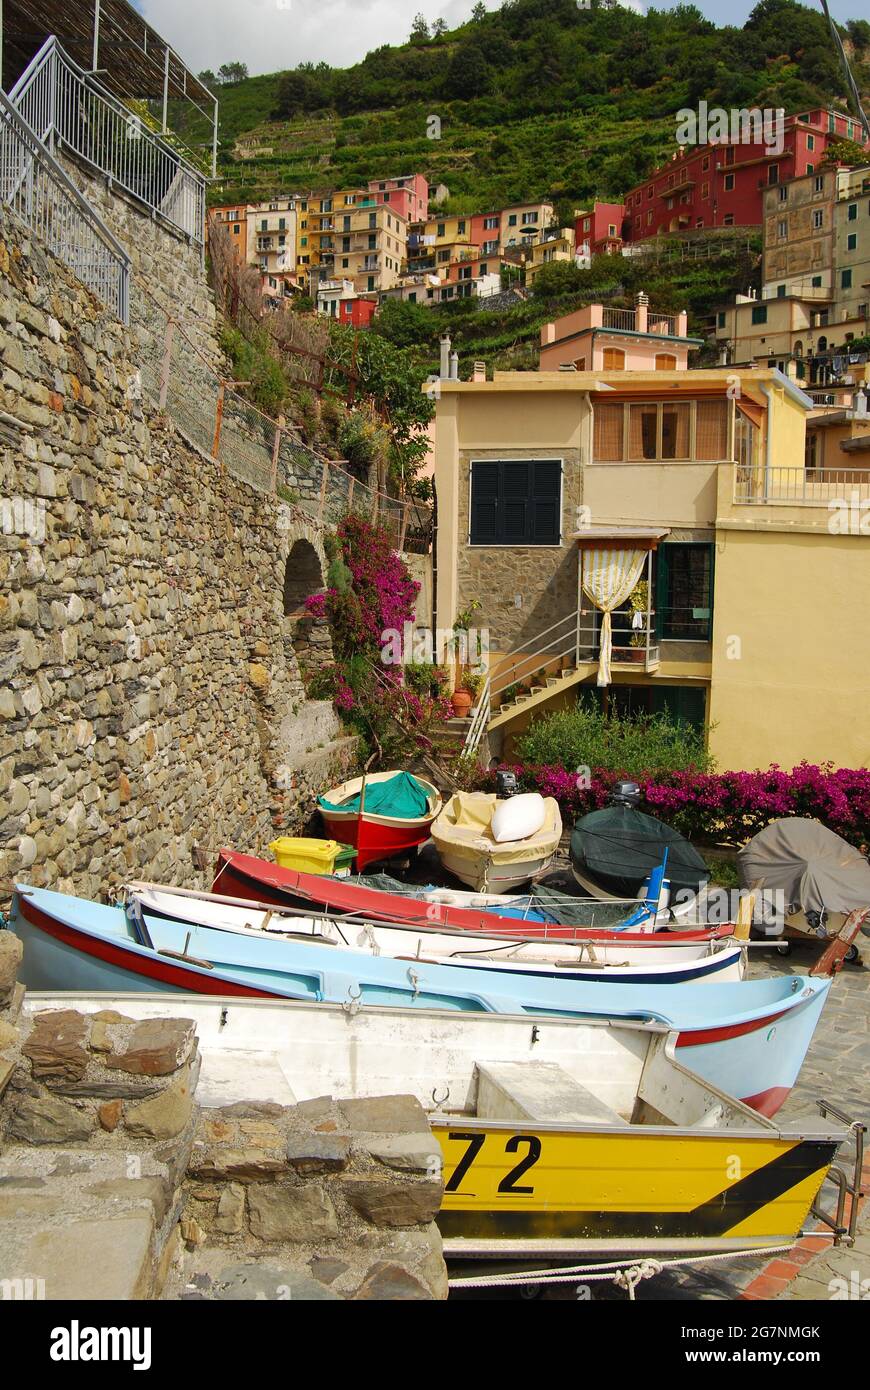 Cinque Terre Italy: Monterosso, Vernazza, Corniglia, Manarola and Riomaggiore. The Cinque Terre, five towns, is a string of five fishing villages. Stock Photo